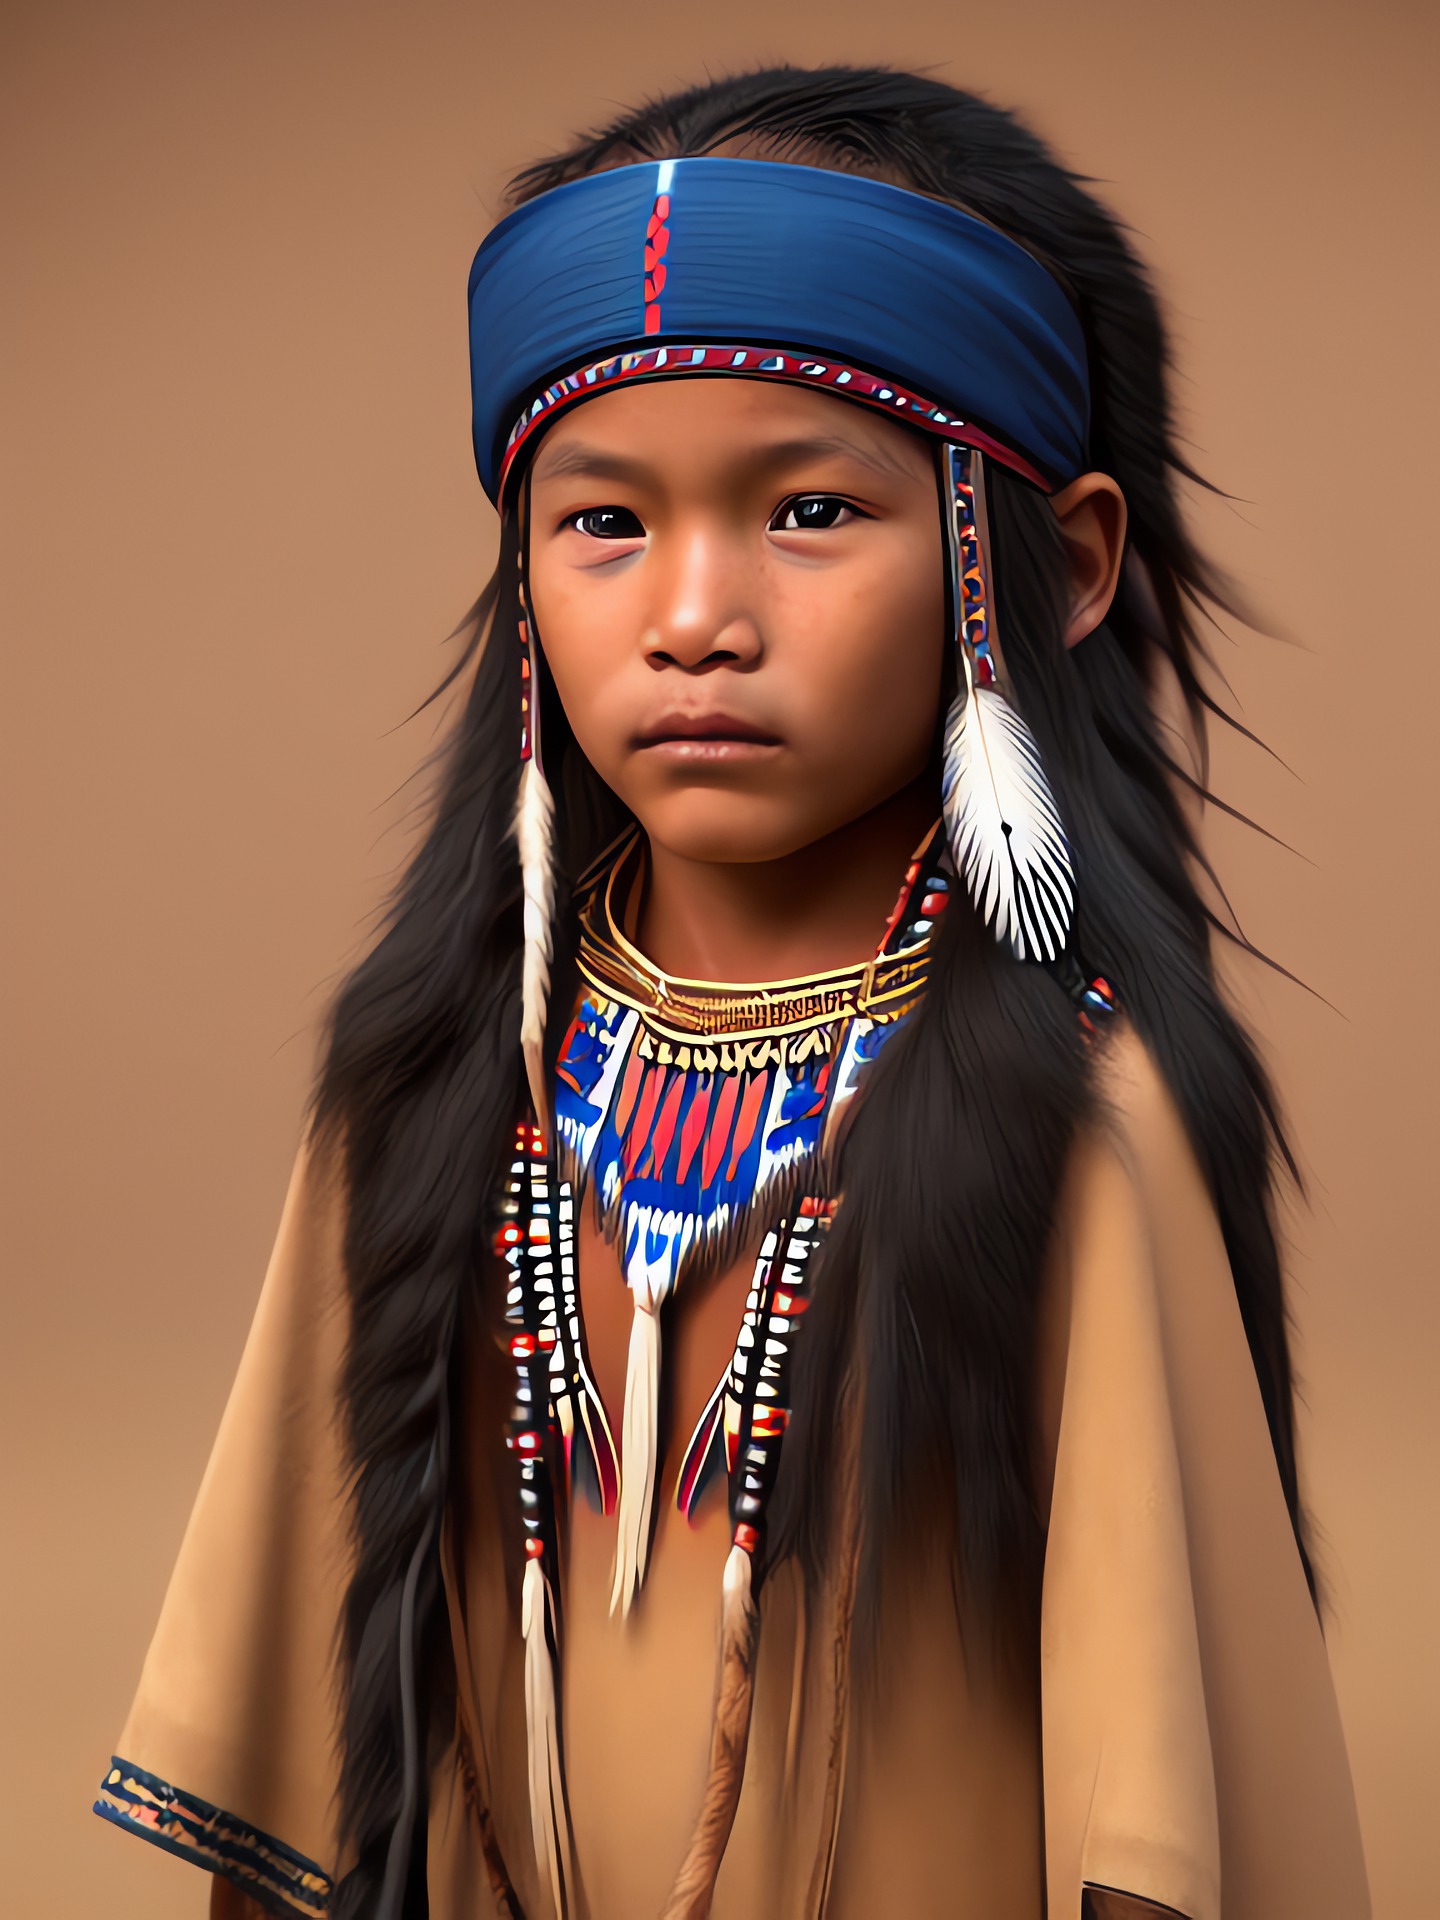 Ein wunderschönes Porträt eines Kindes mit indianischen Wurzeln